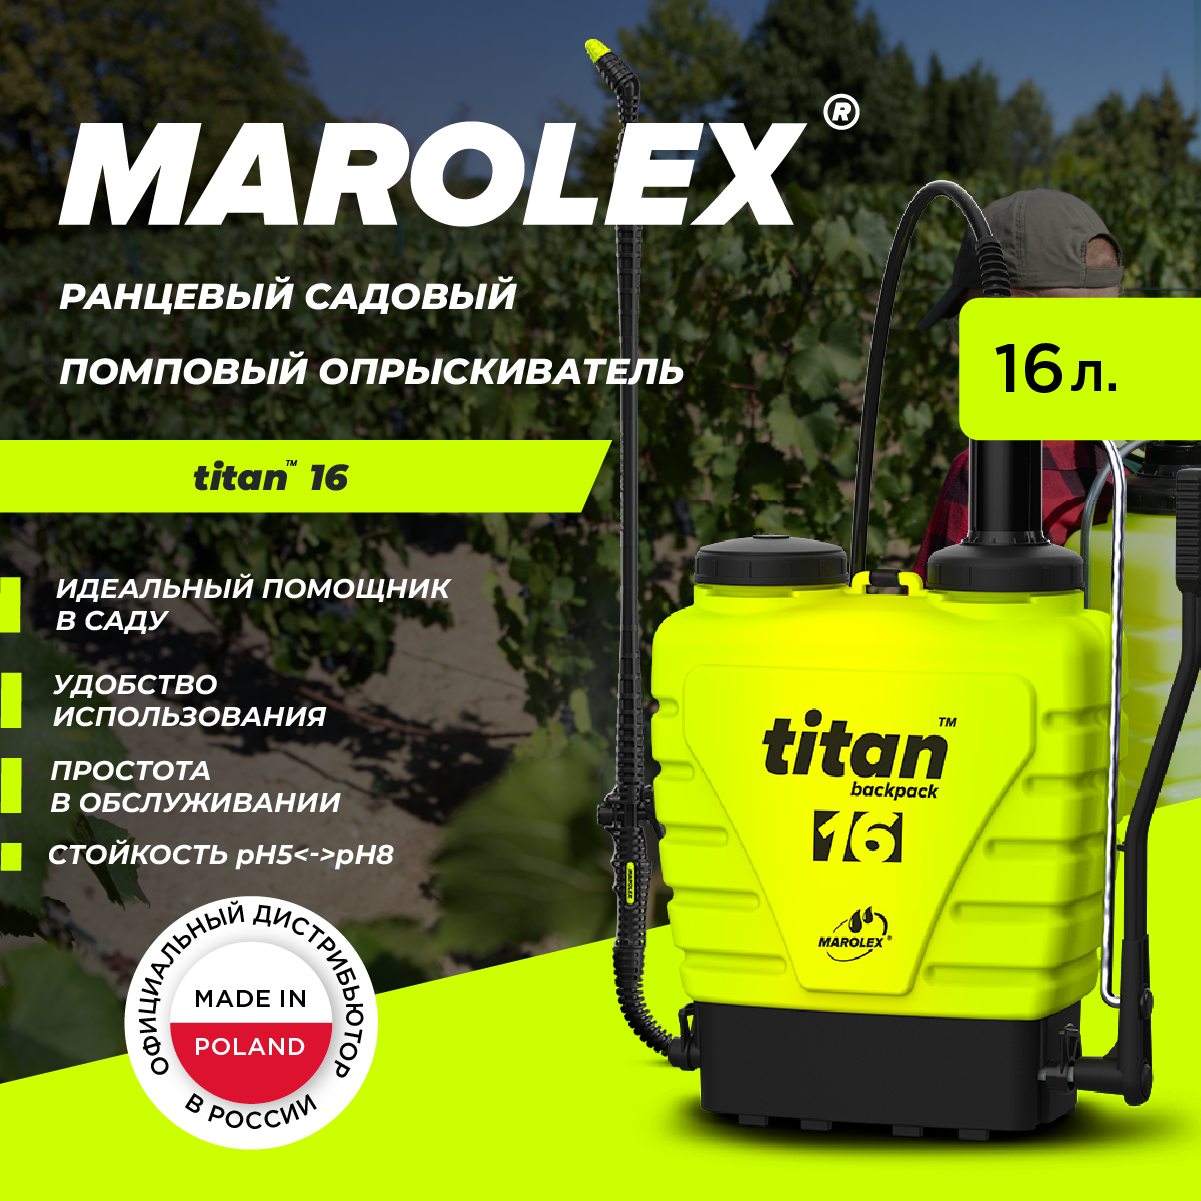 MAROLEX | Titan 16 - Ранцевый садовый помповый опрыскиватель.